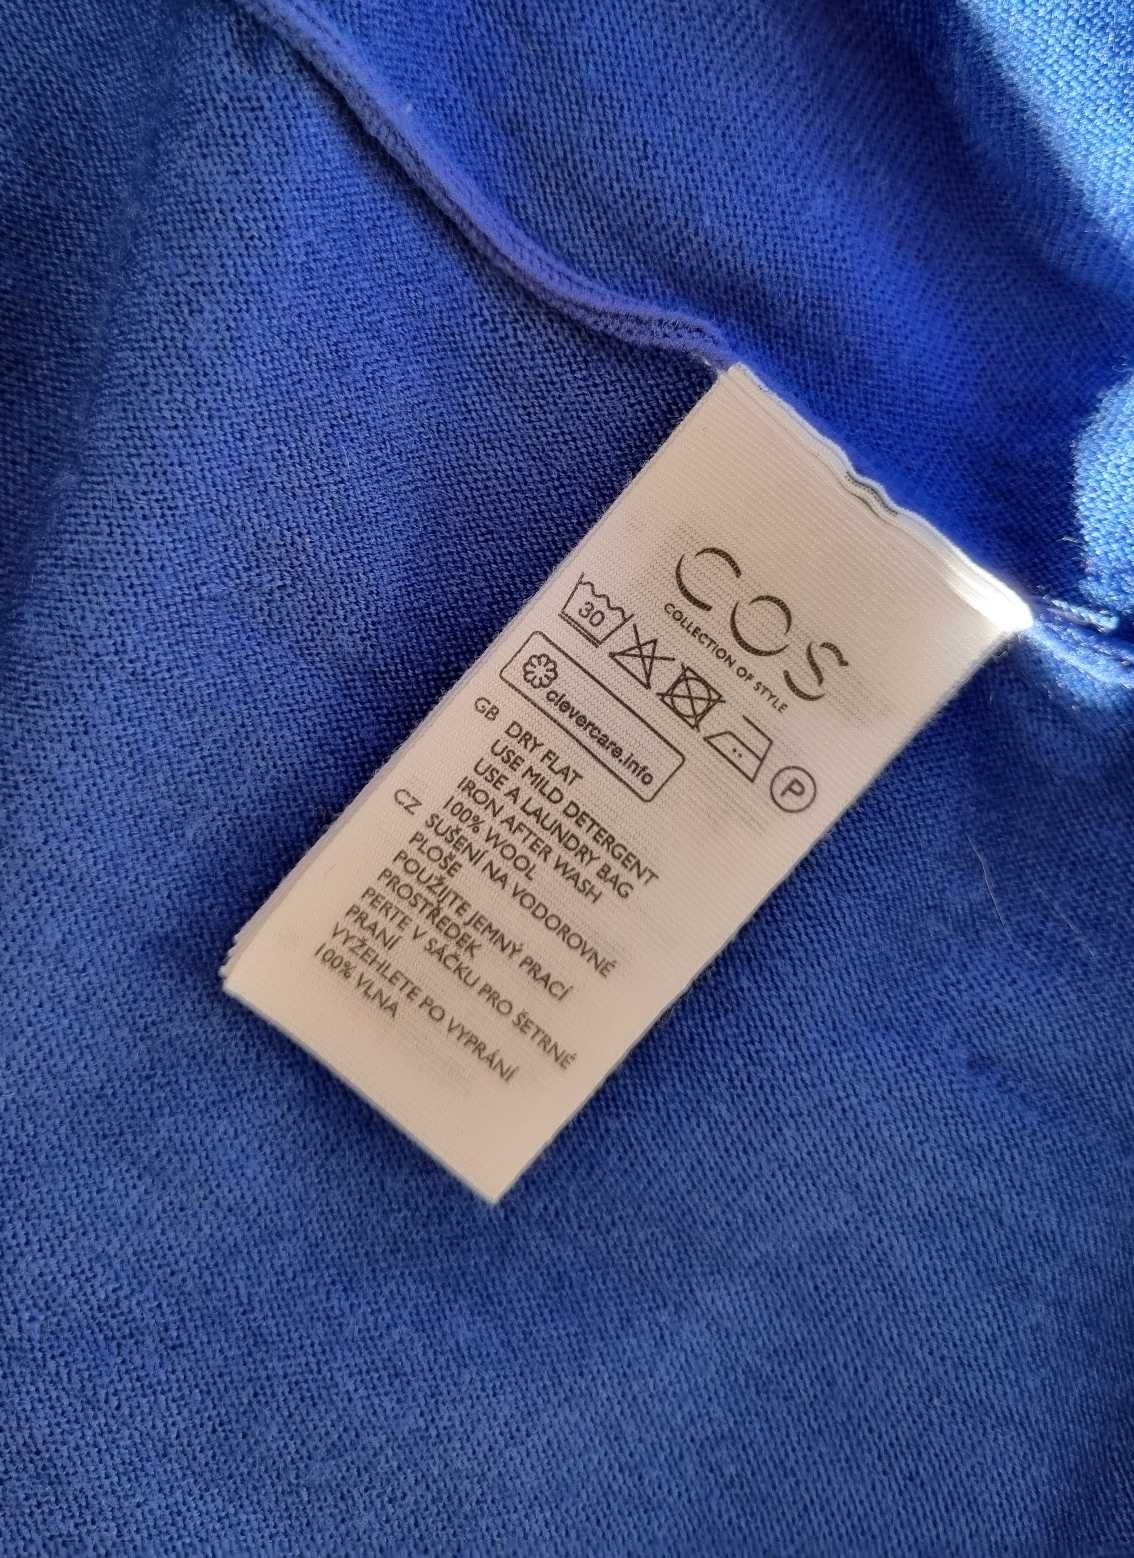 Wełniana kobaltowa sukienka COS rozmiar M 100% wełna